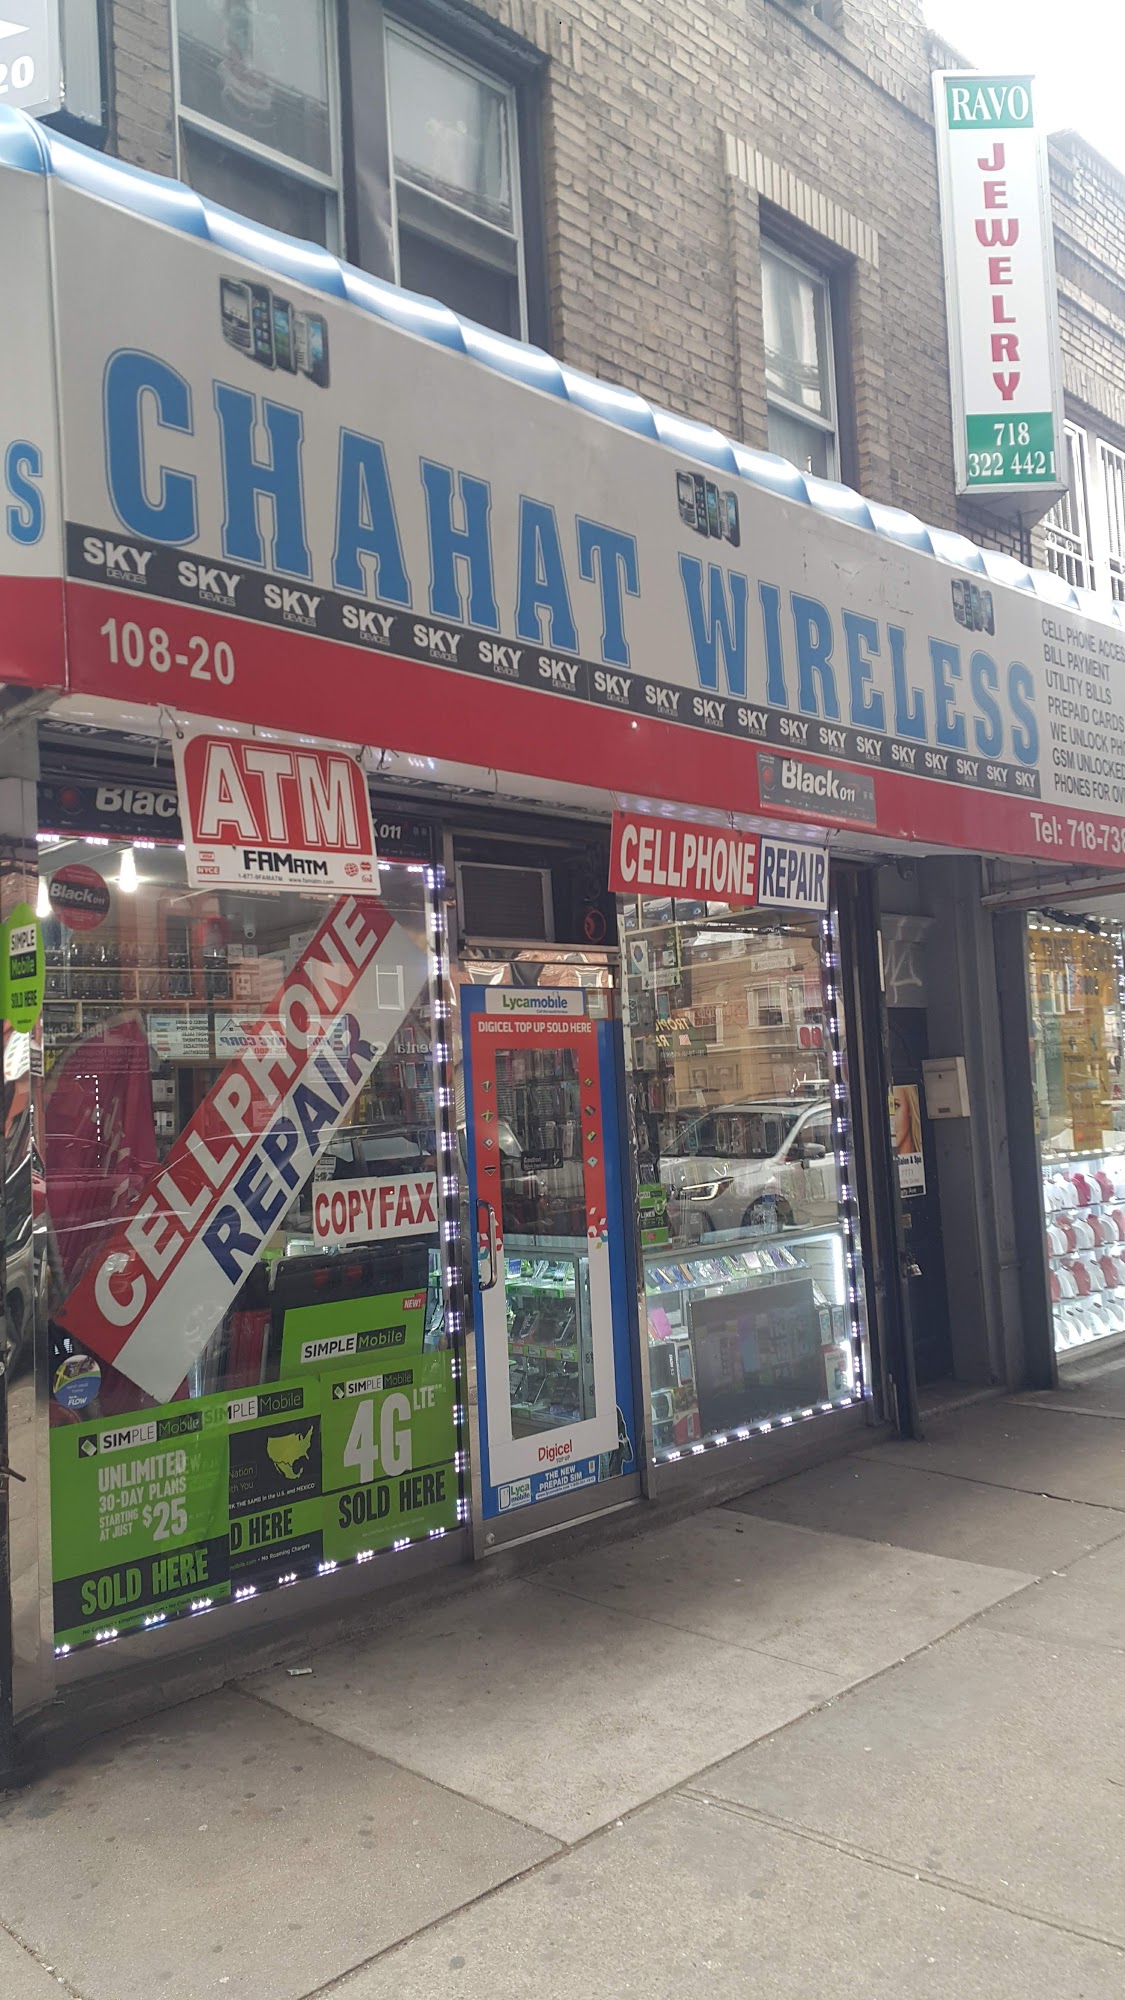 Chahat Wireless